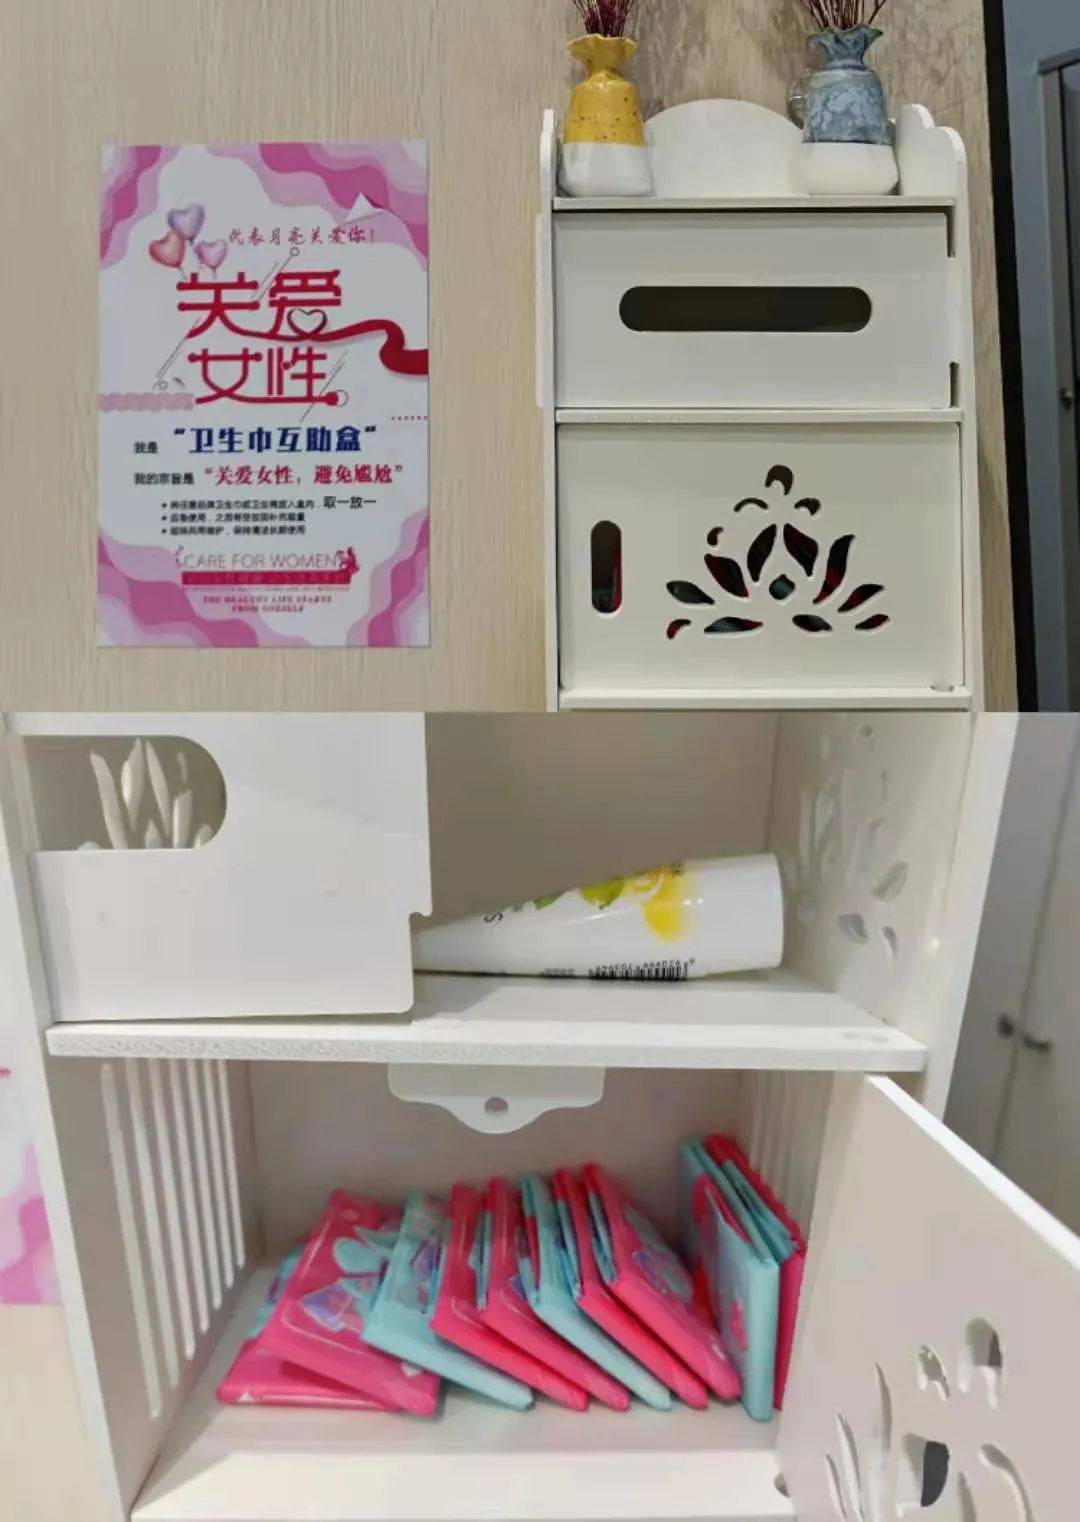 卫生巾互助盒图片图片